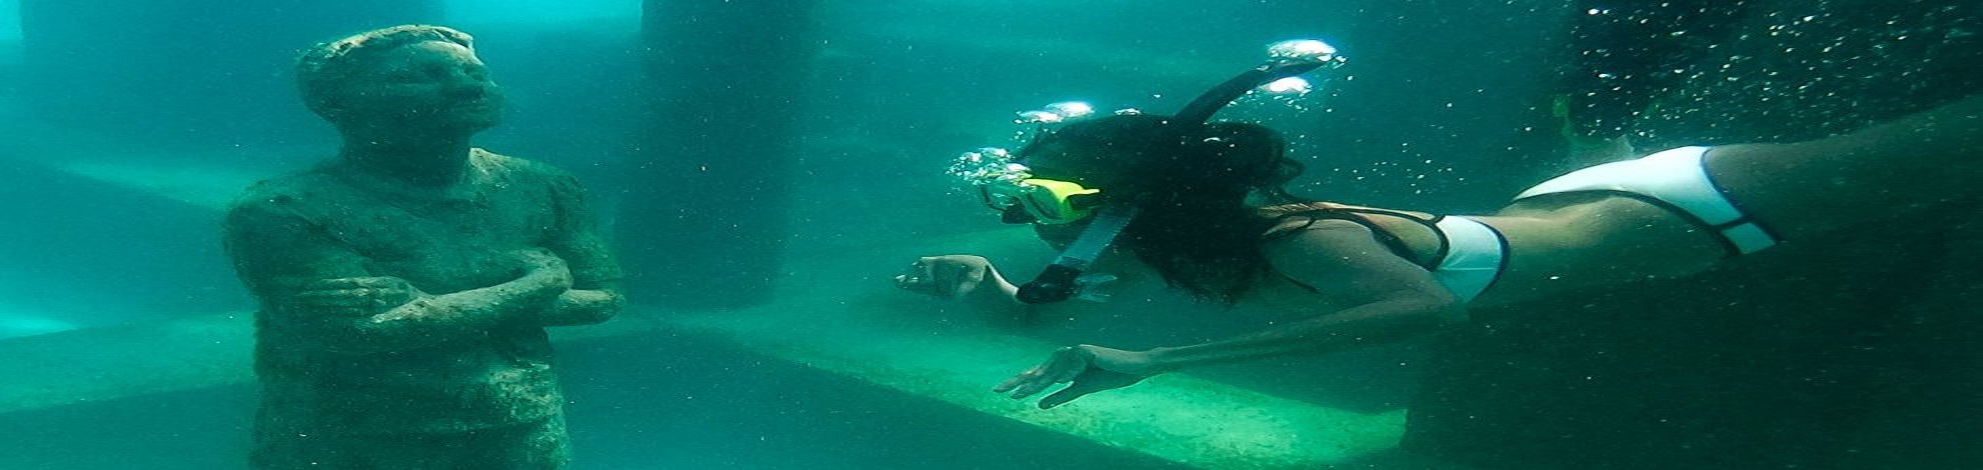 Underwater Museum India